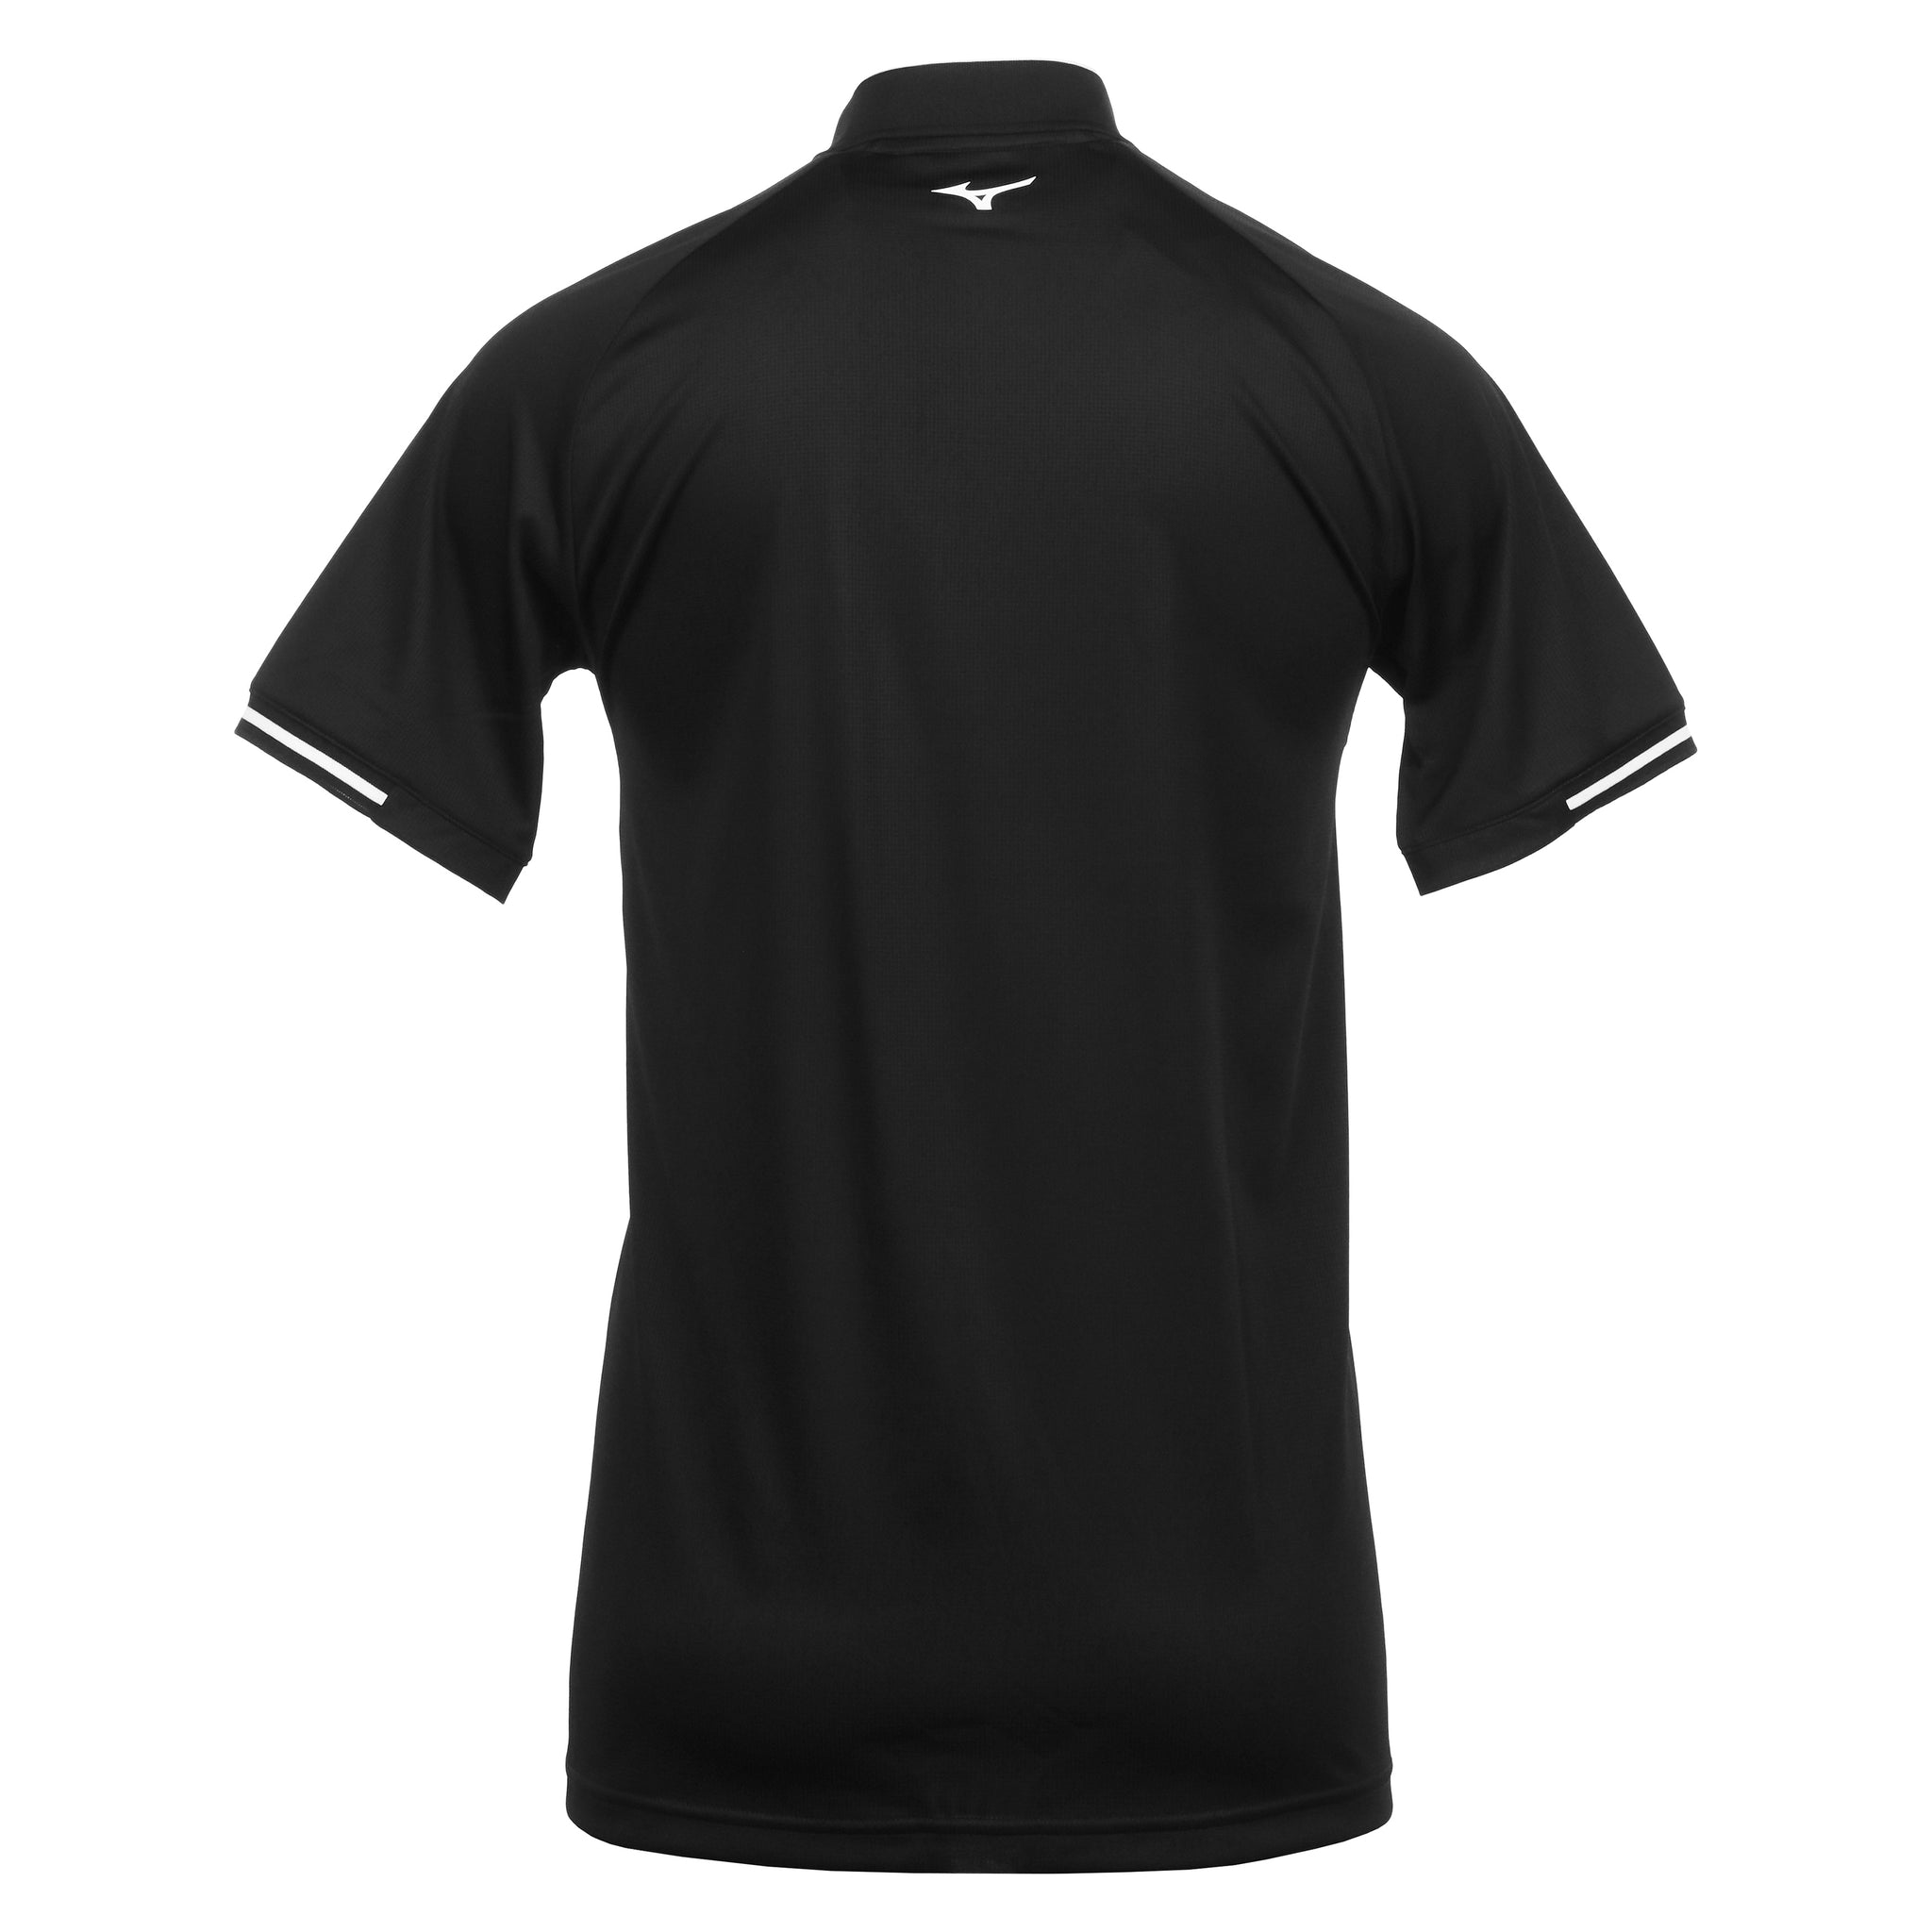 Mizuno Golf Ace Polo Shirt